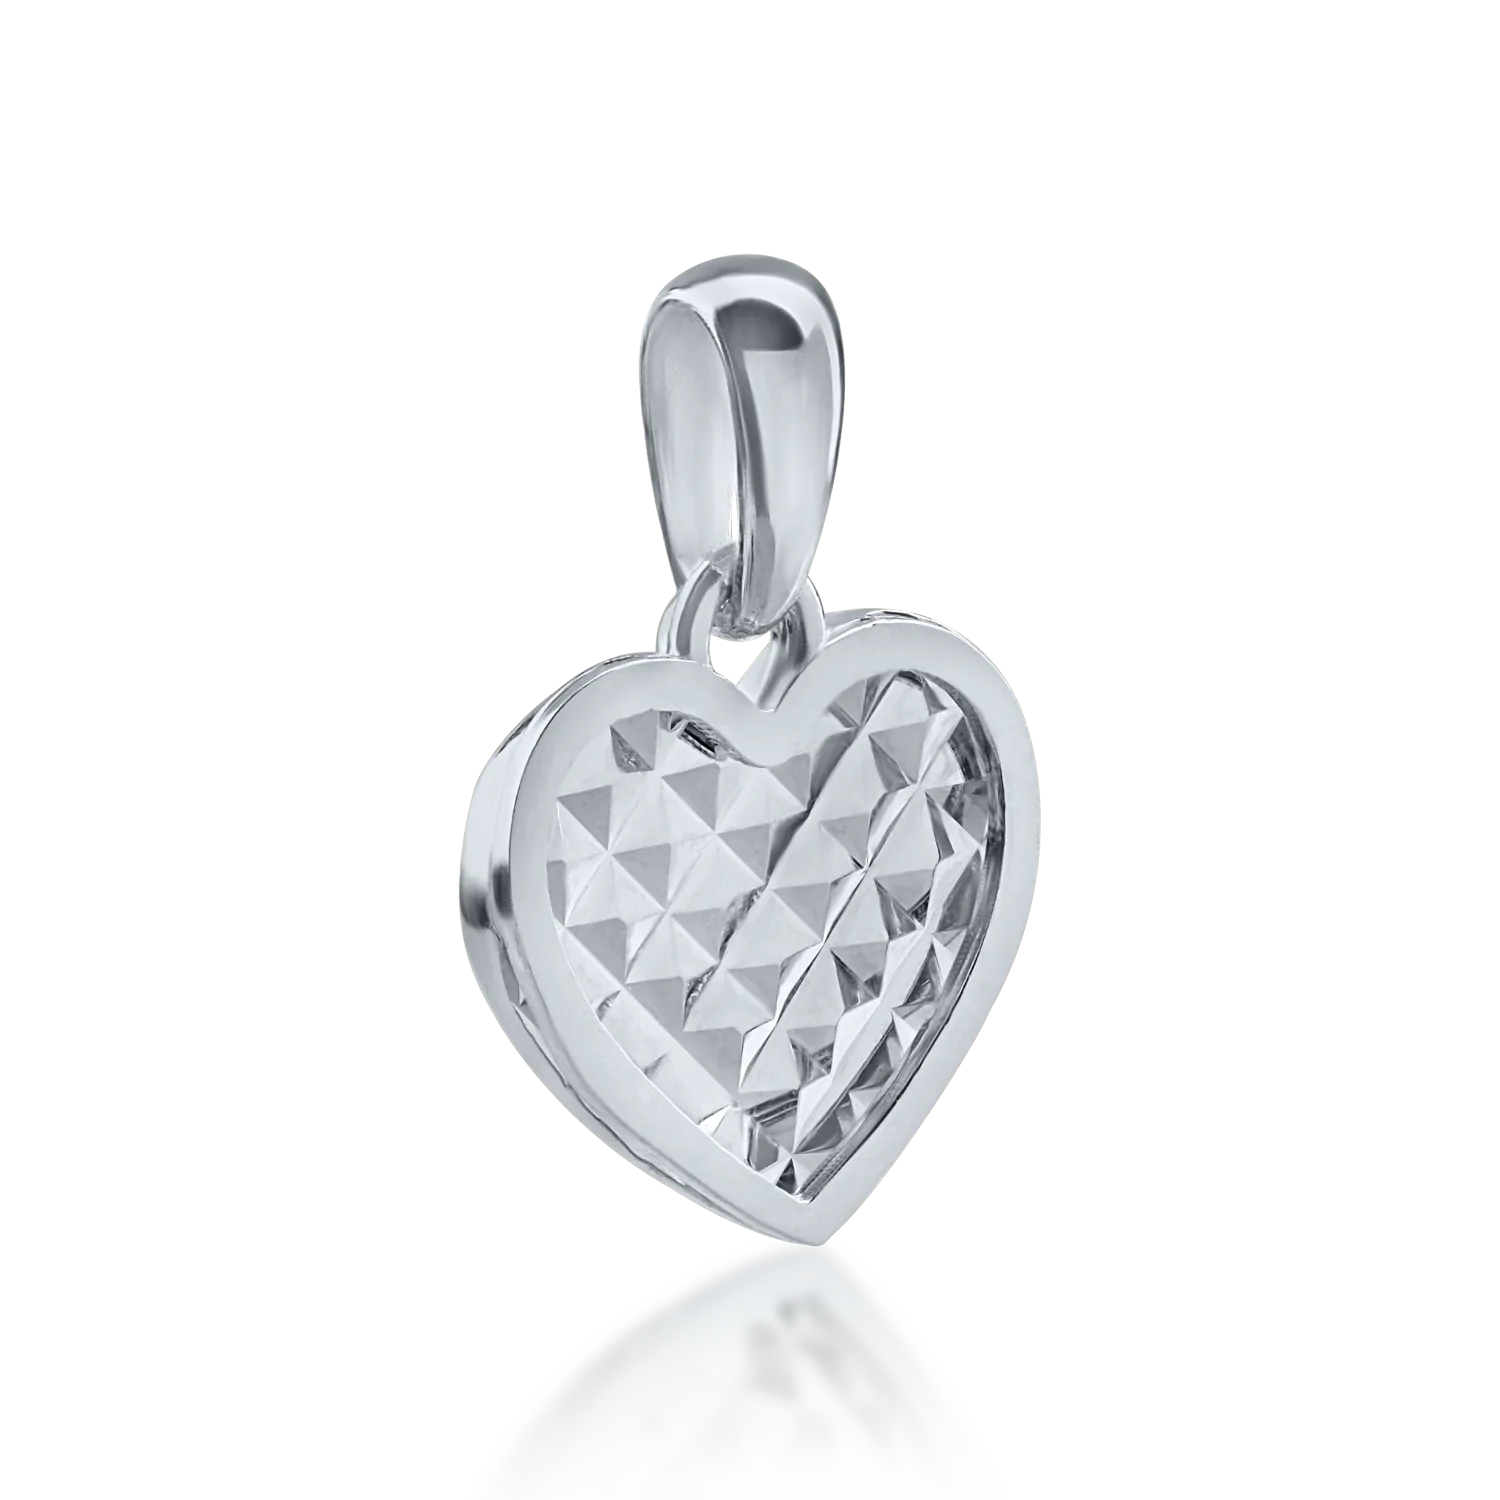 White gold heart pendant